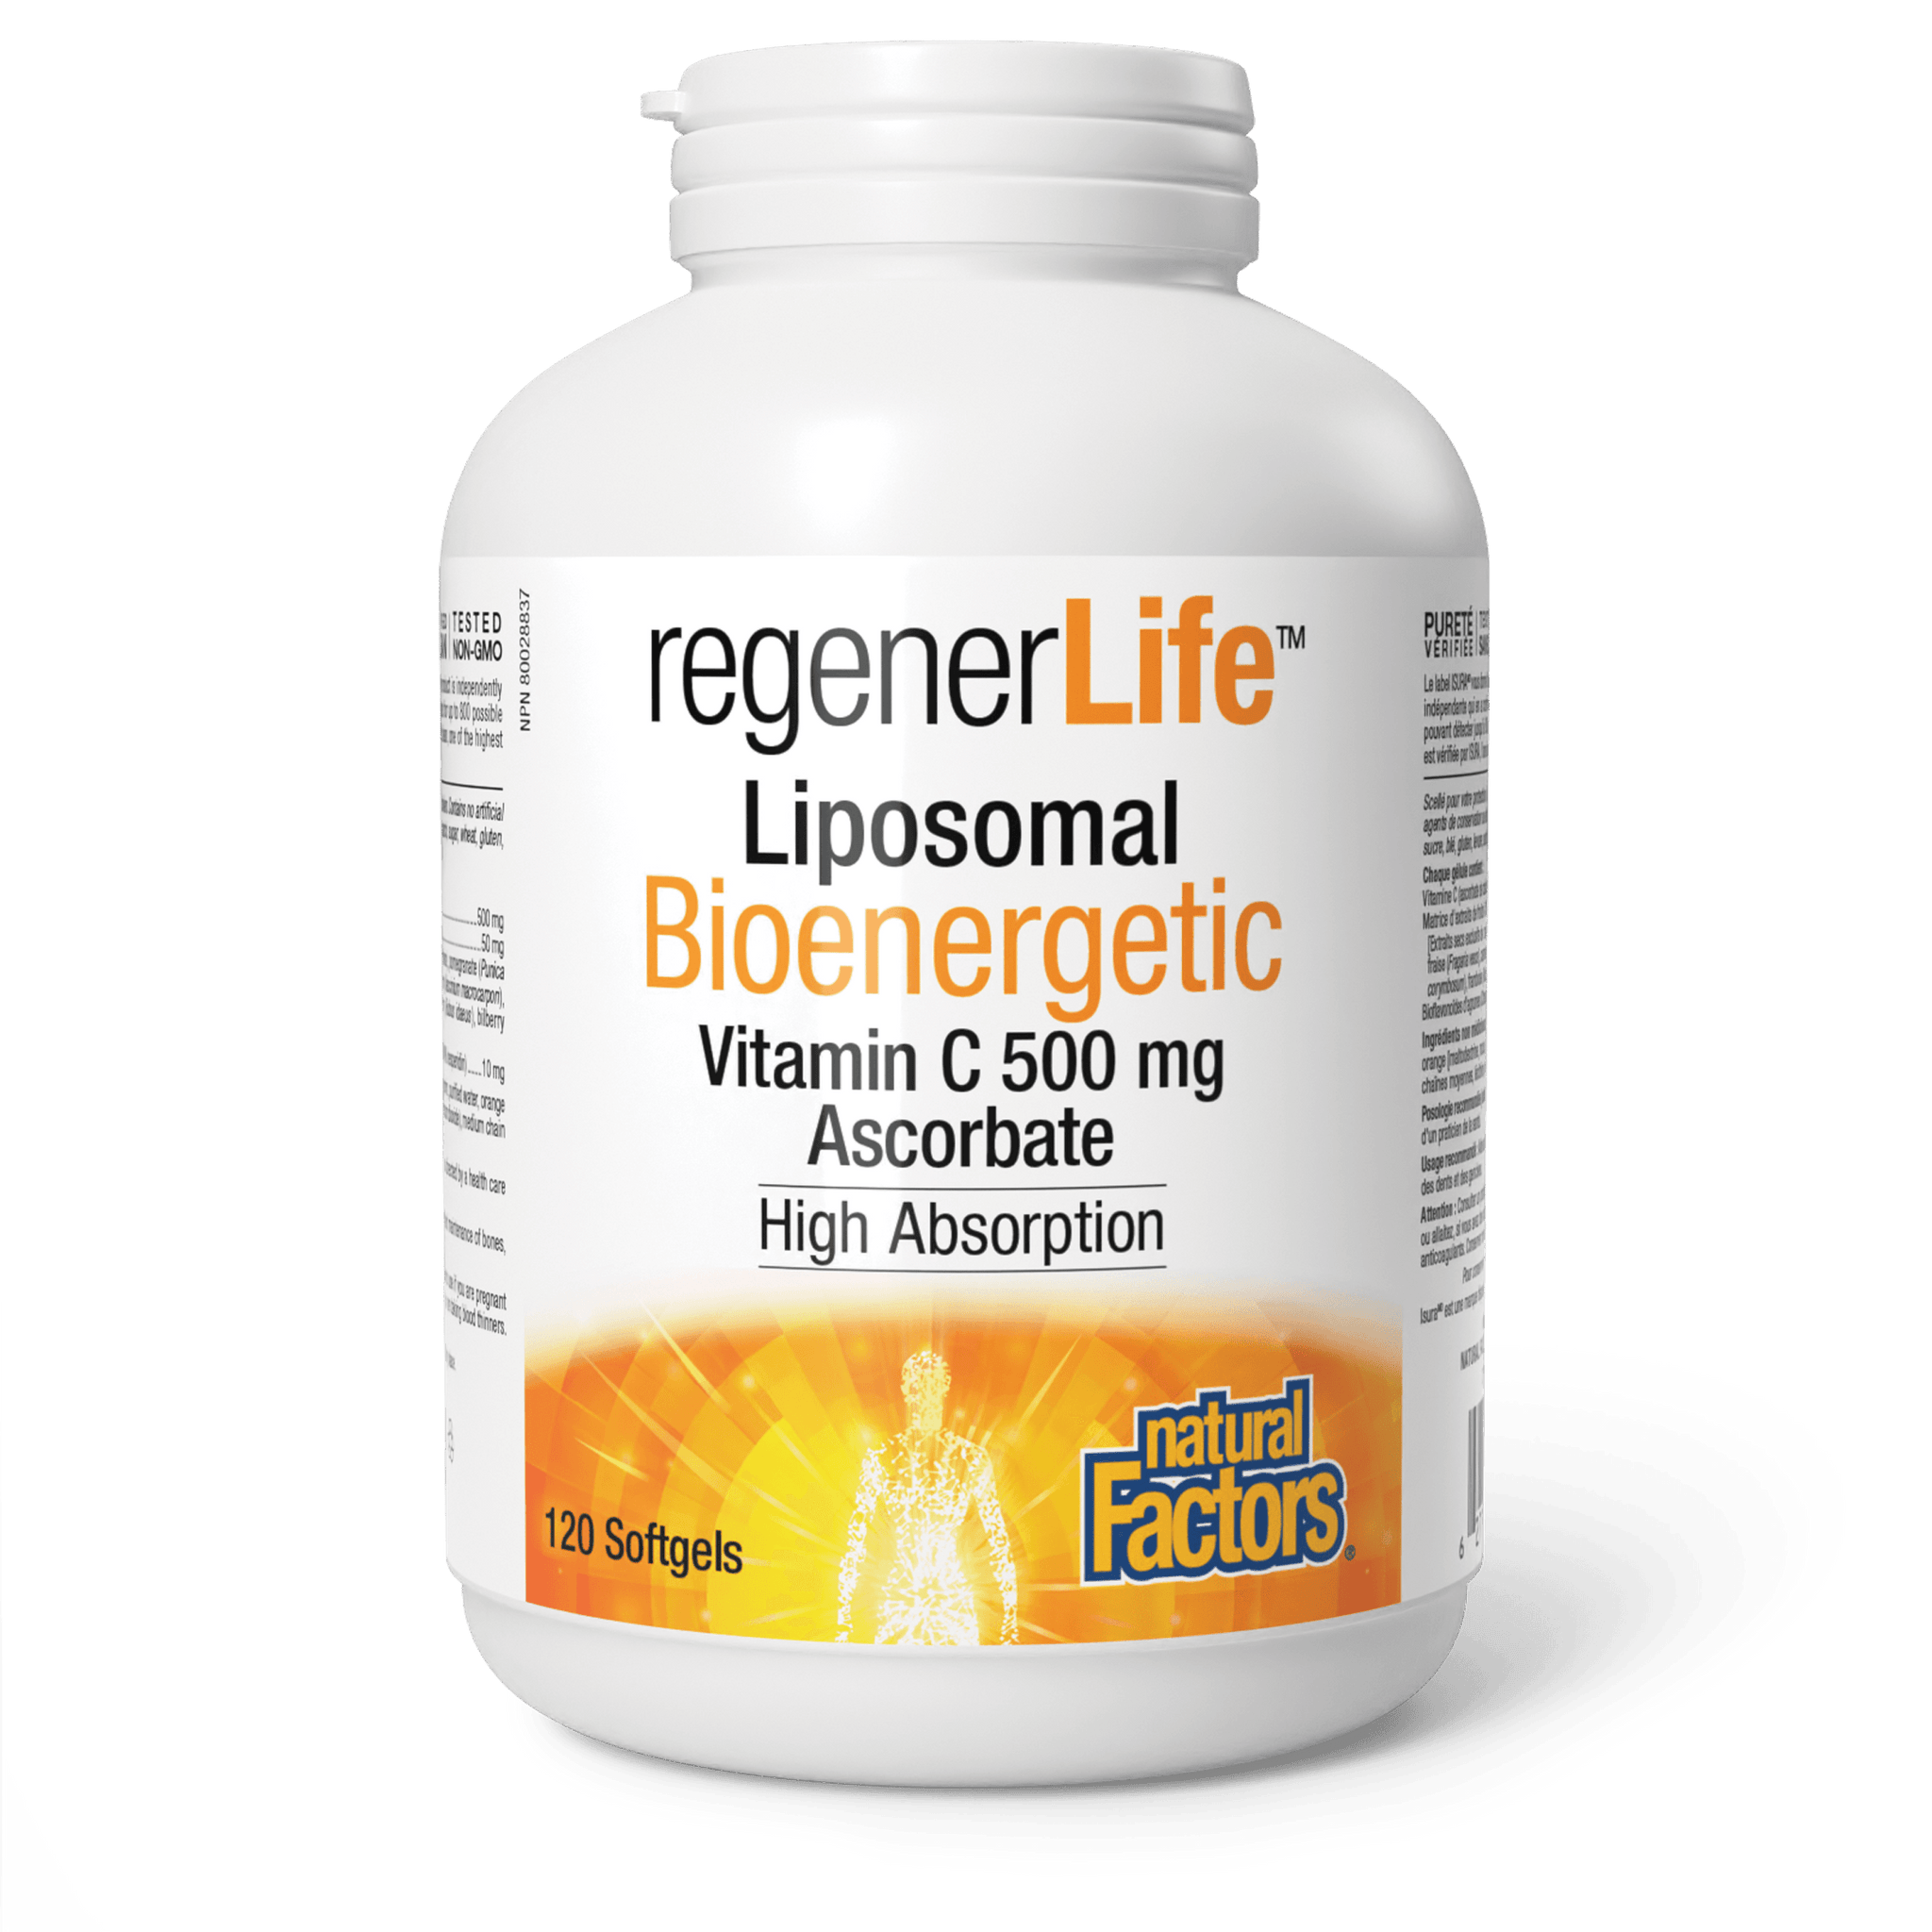 Natural Factors RegenerLife Liposomal Bioenergetic Vitamin C 120 Softgels